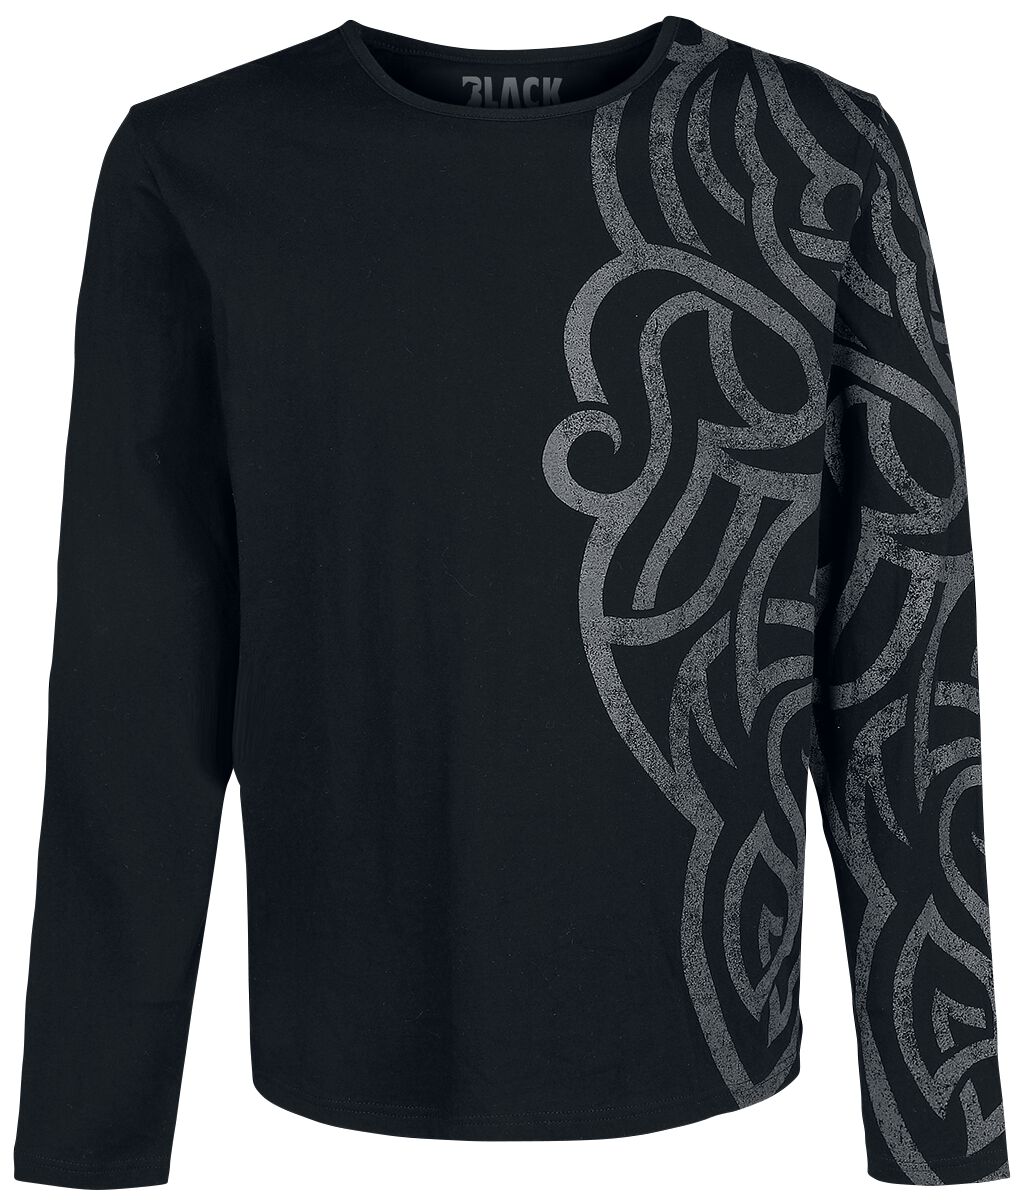 Levně Black Premium by EMP Košile s dlouhými rukávy a velkým ornamentem Tričko s dlouhým rukávem černá